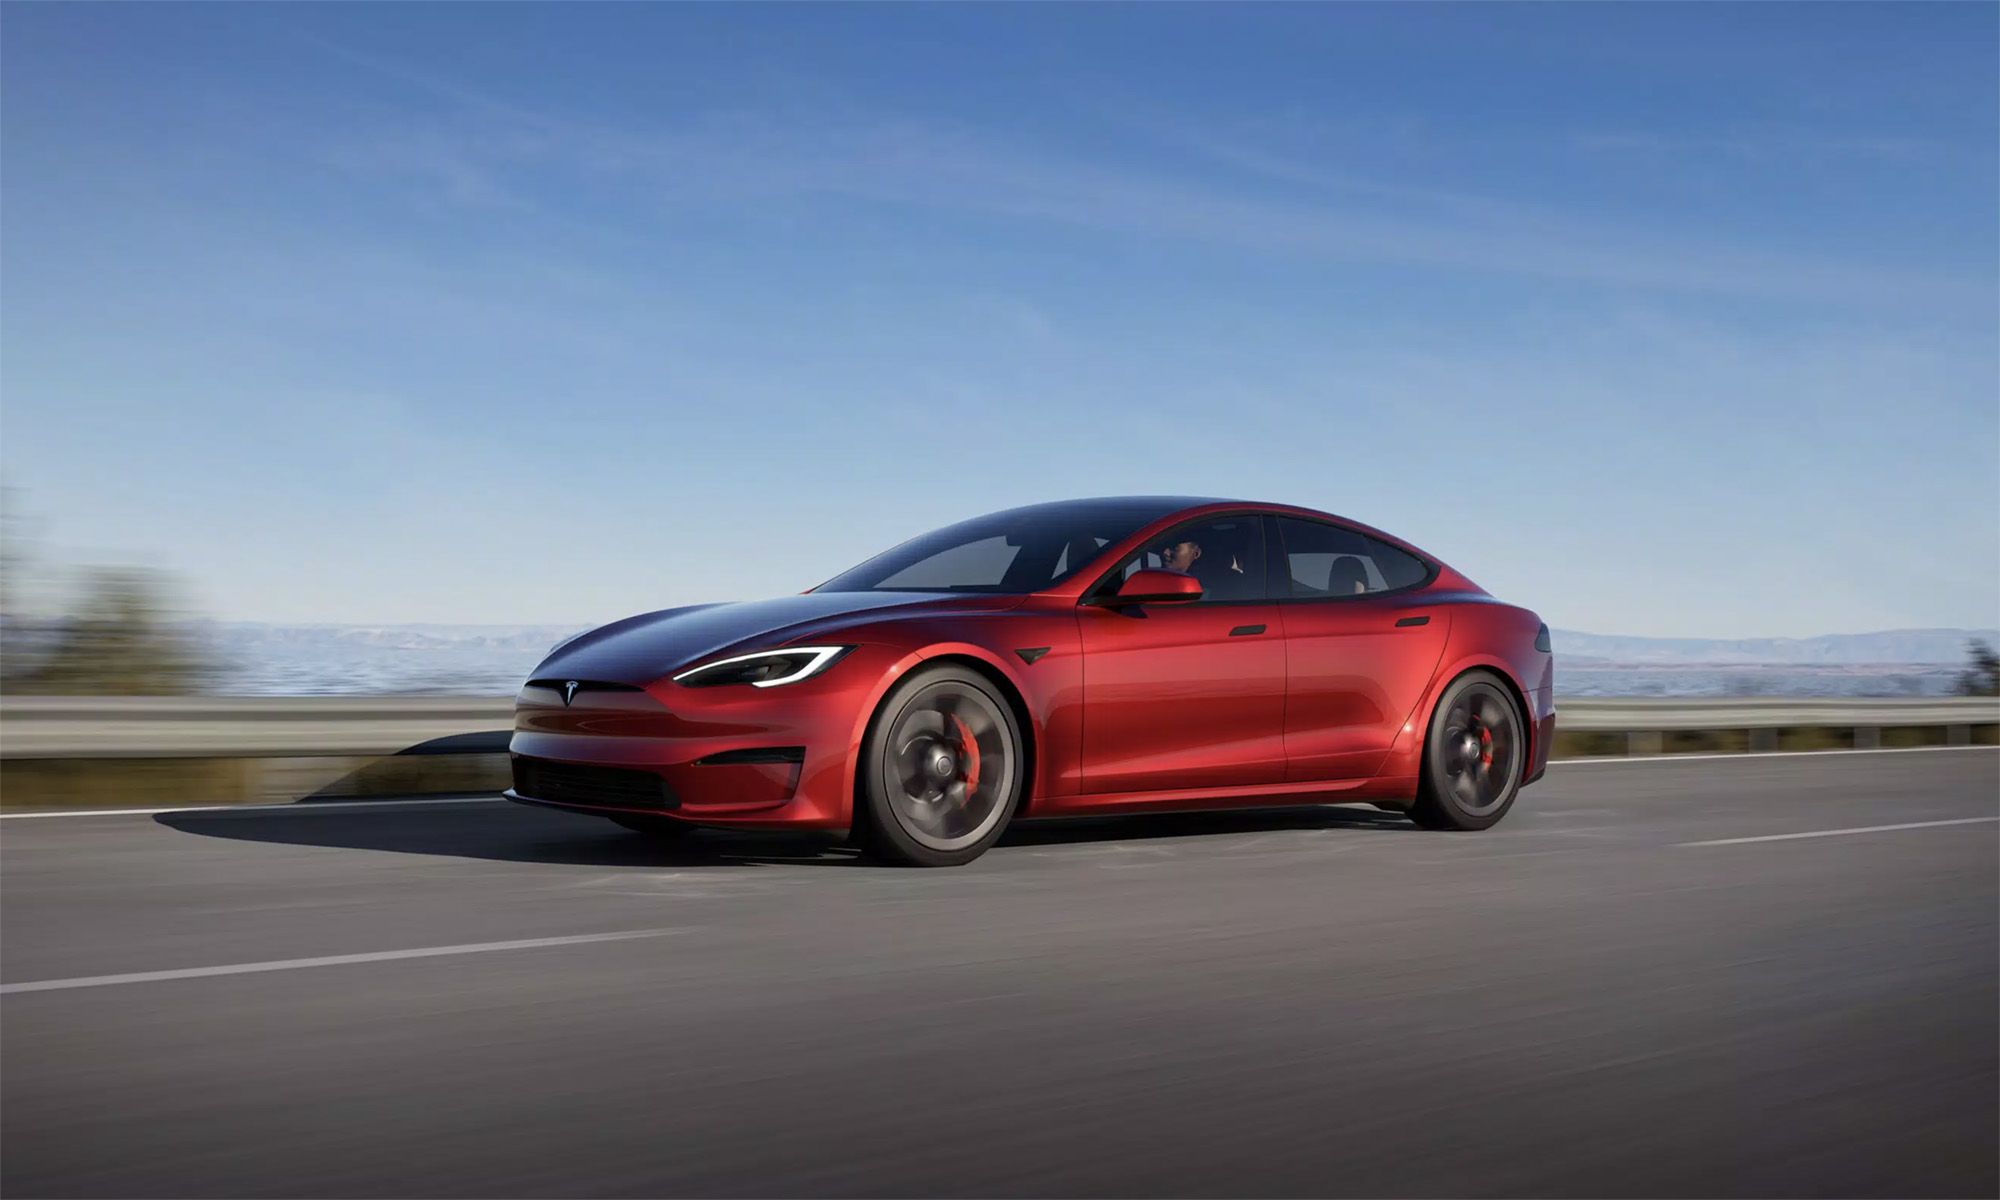 El Tesla Model S es uno de los modelo más veteranos del mercado de coches eléctricos y una de las principales fuentes de datos.